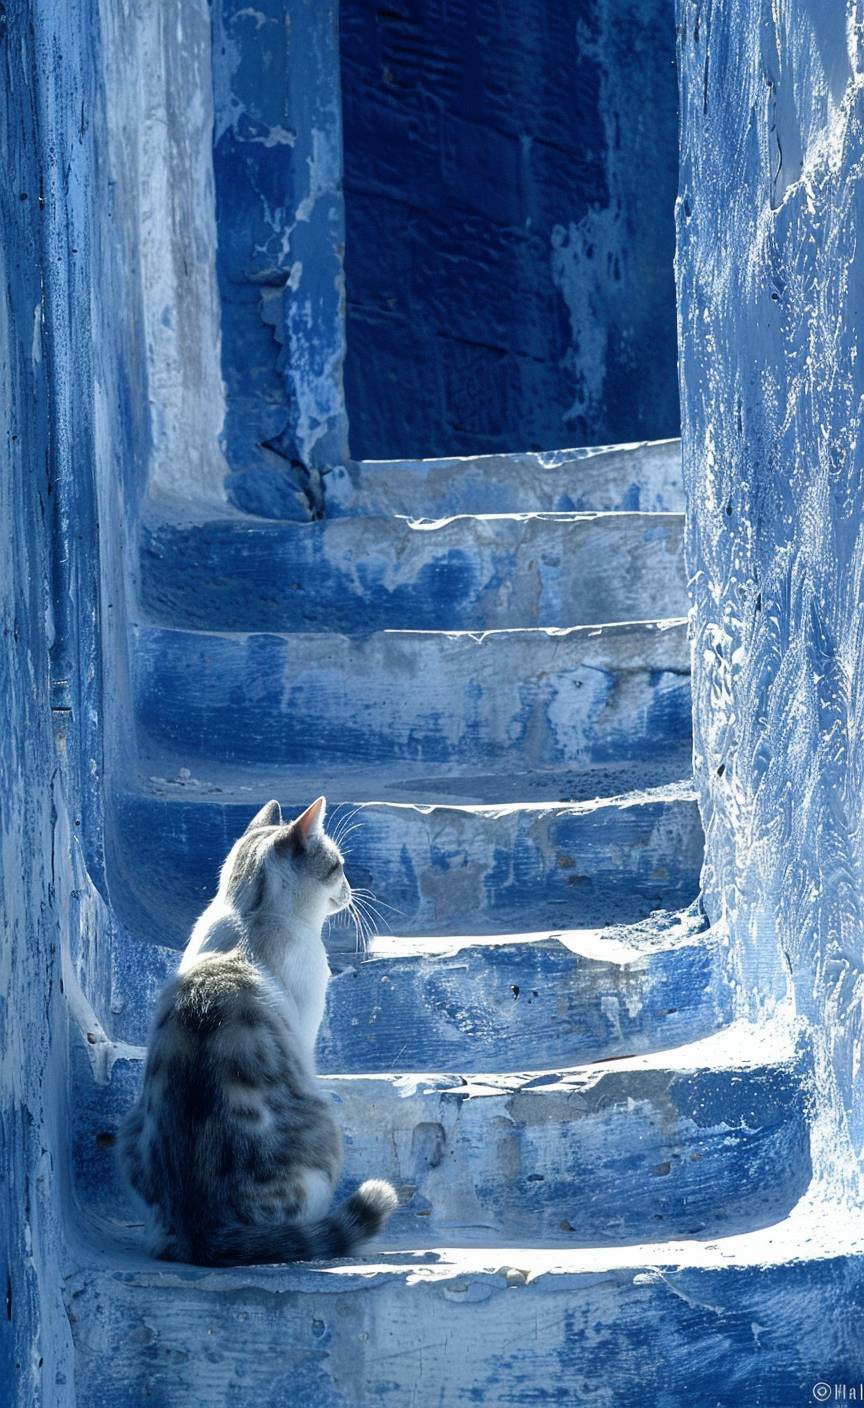 ギリシャ、カルパソス島の階段に座っている猫の現代アート作品、青と白のトーン、レンブラント・ファン・ラインとインゲ・シュスター、シュテファン・ゲゼル、ジェラルド・スカーフェによる作品、アントン・セメノフとアーサー・ボイドのスタイルで描かれている